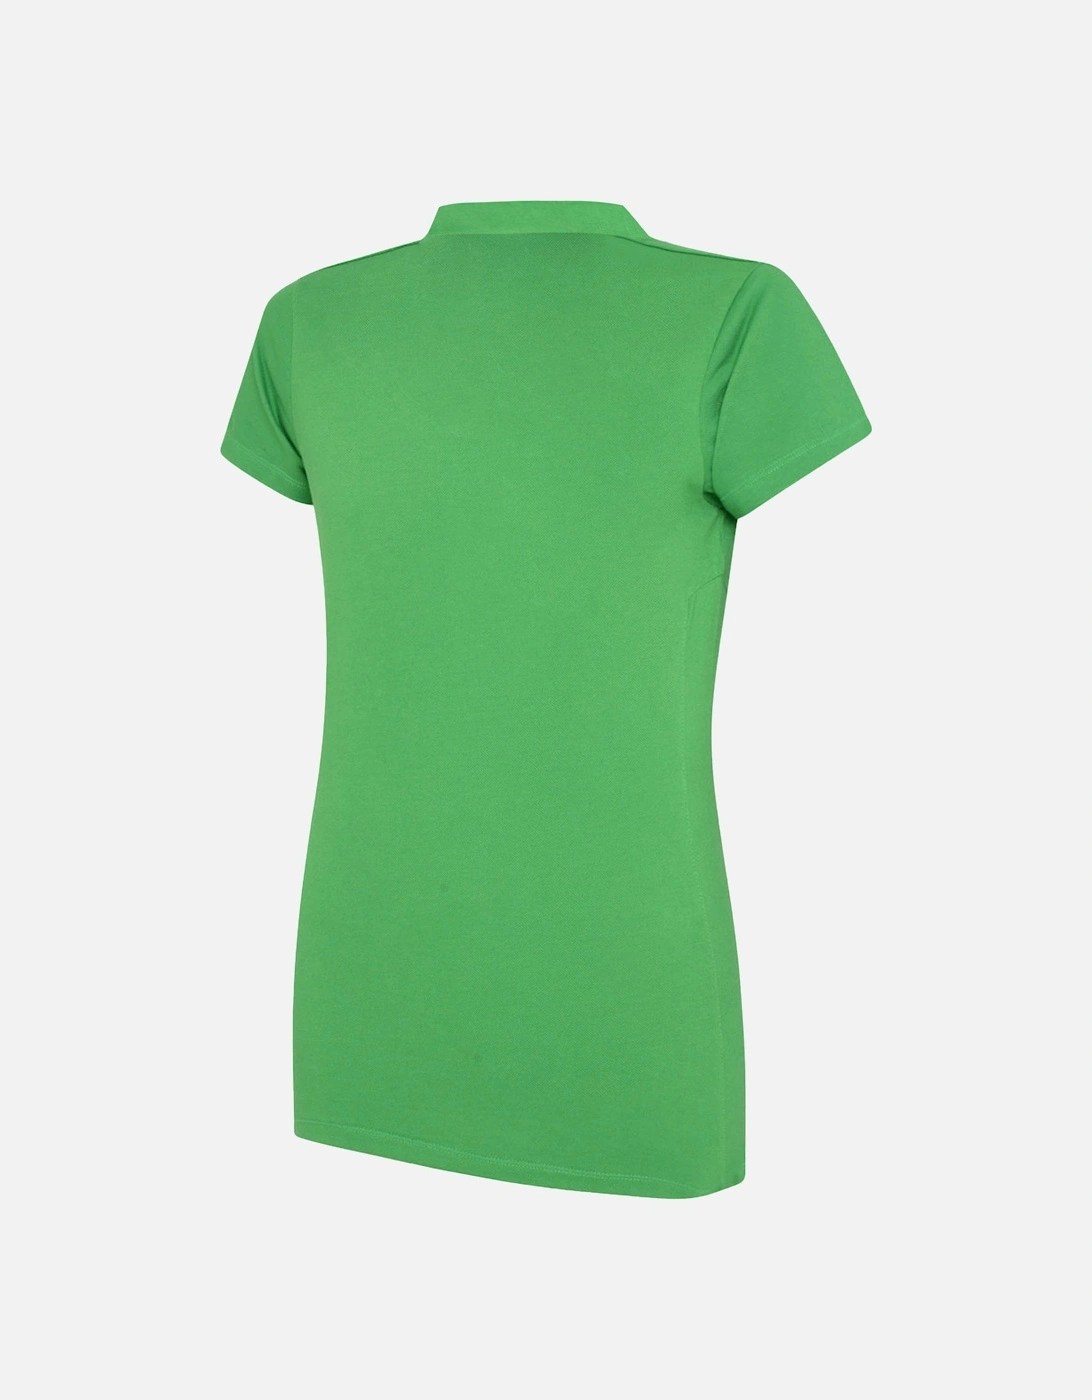 Womens/Ladies Club Essential Polo Shirt